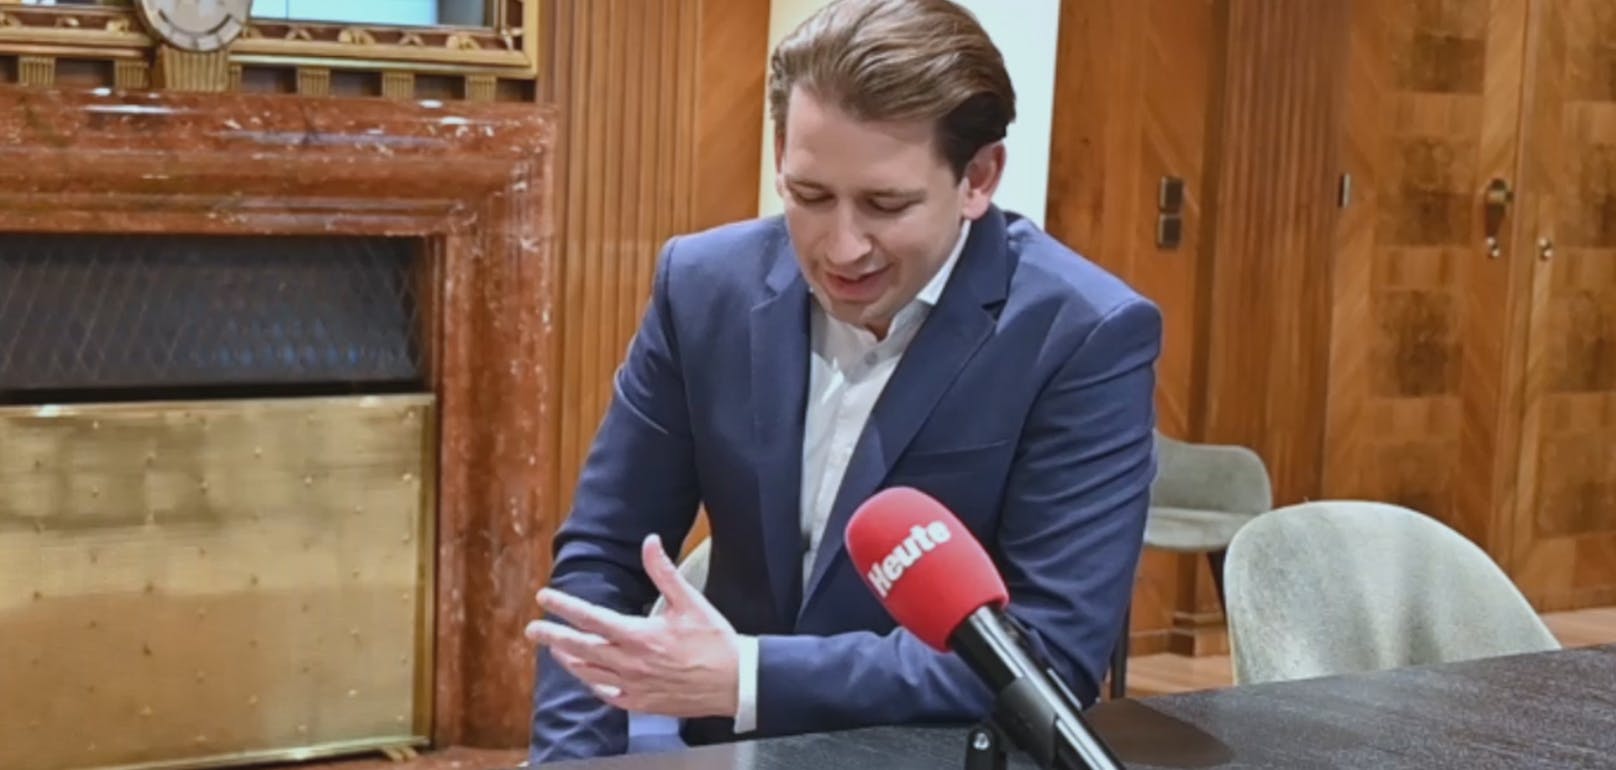 Bundeskanzler Sebastian Kurz über seinen Besuch im Schweizerhaus